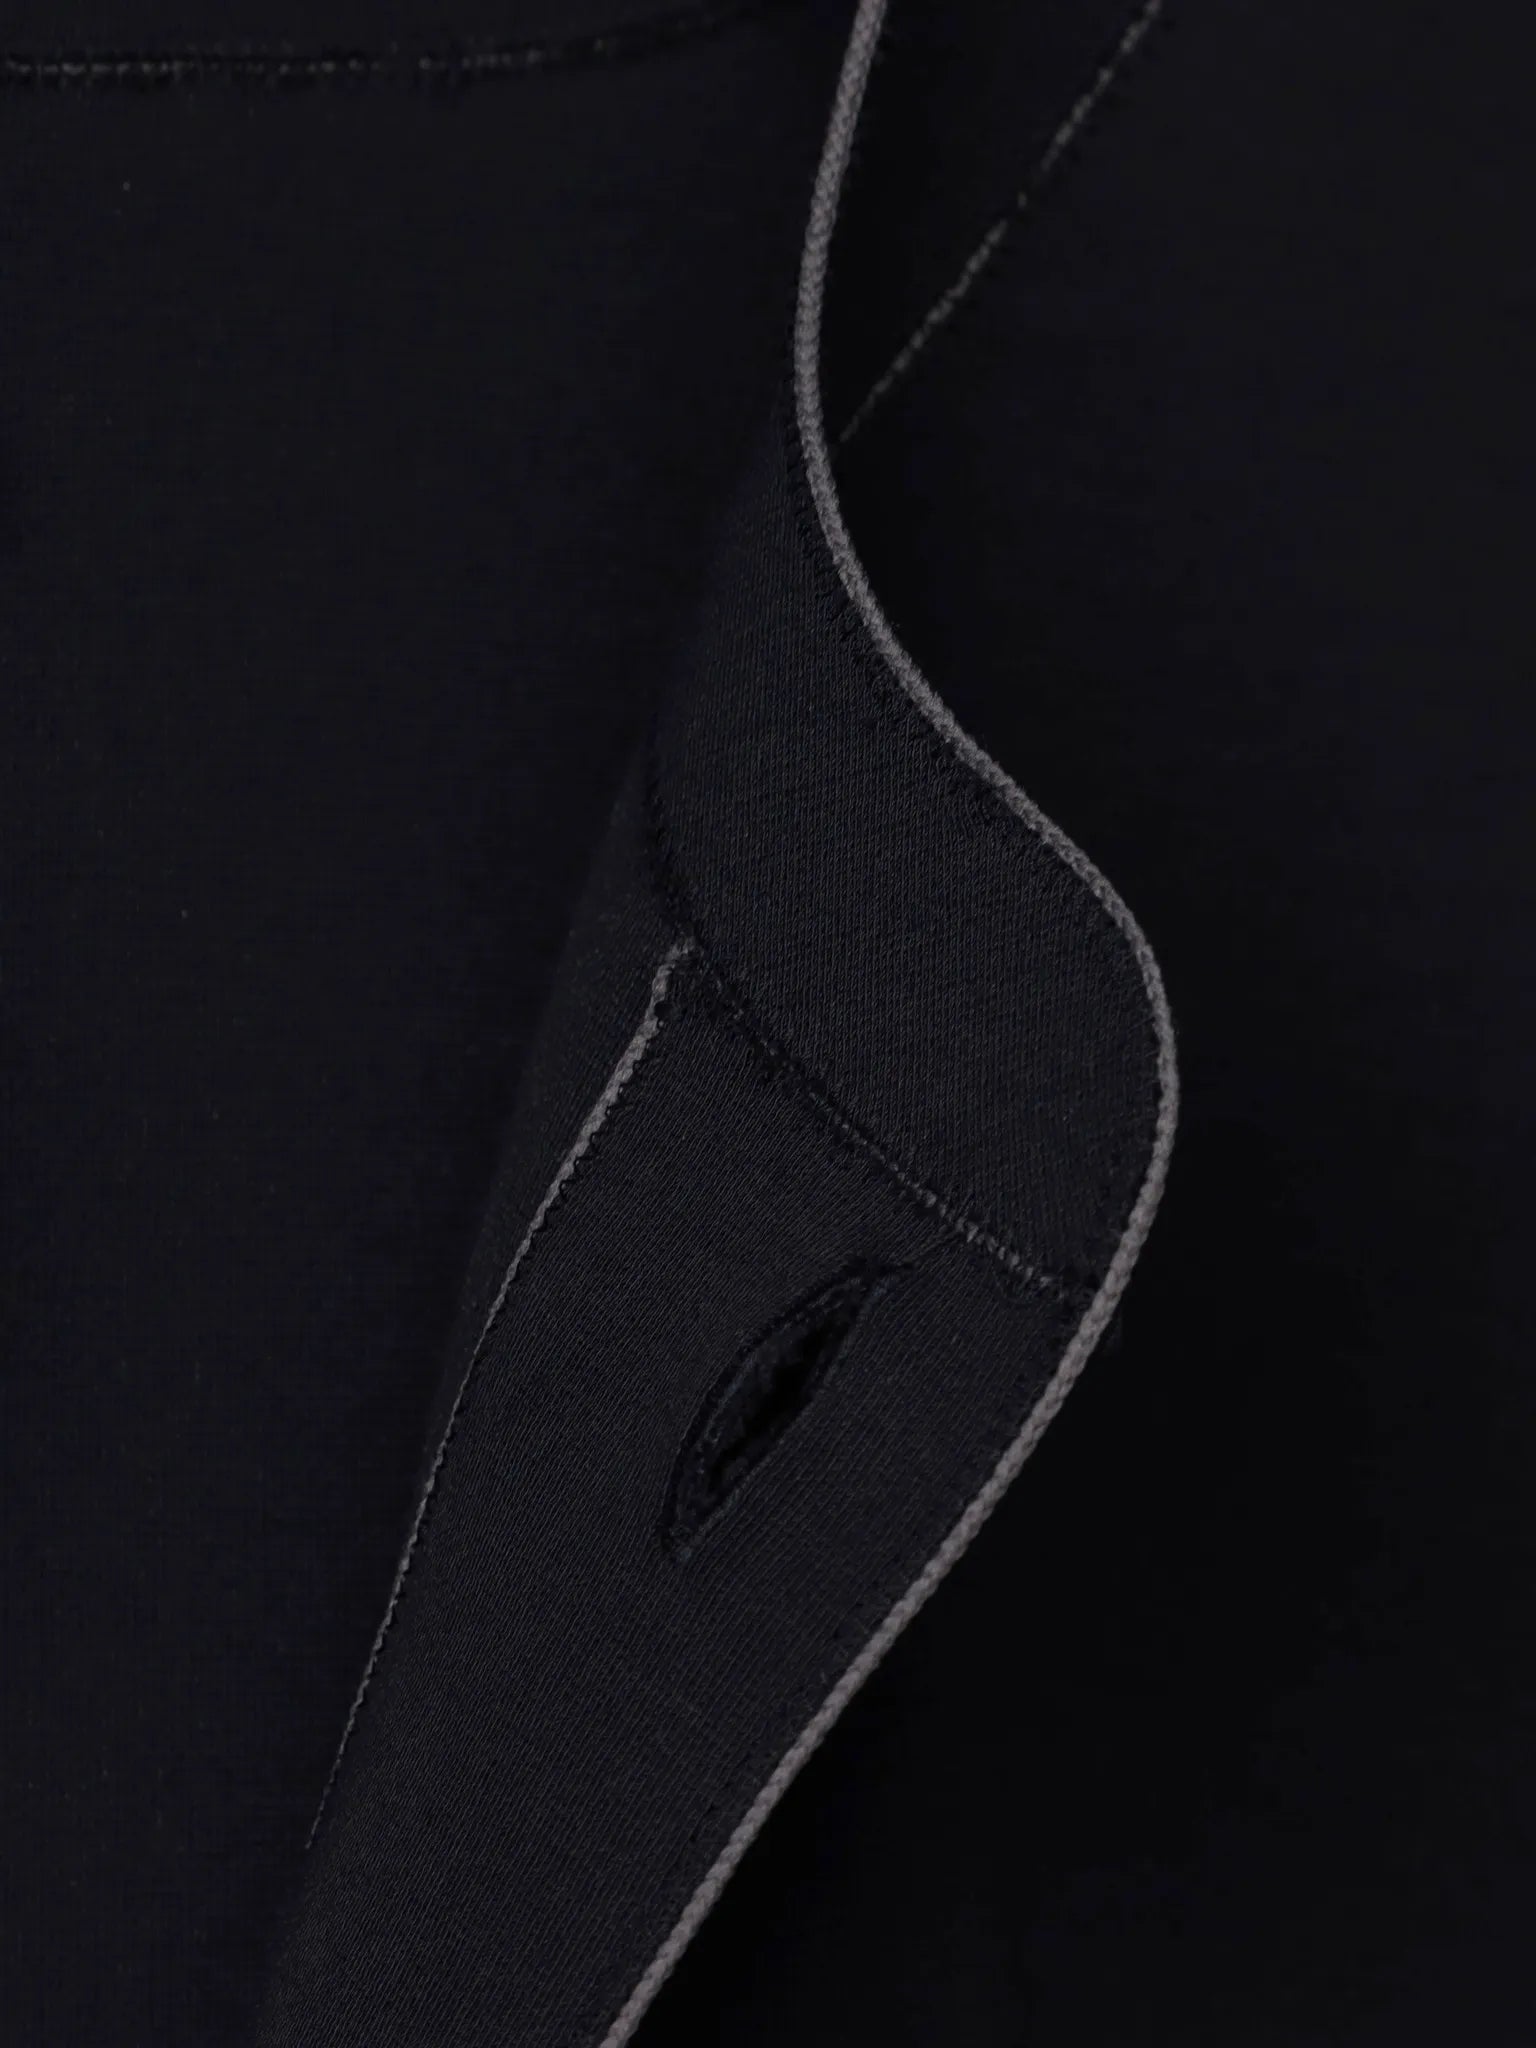 山内-zz強撚ポンチ-ショートスリーブtシャツ-black-gray-cord-6